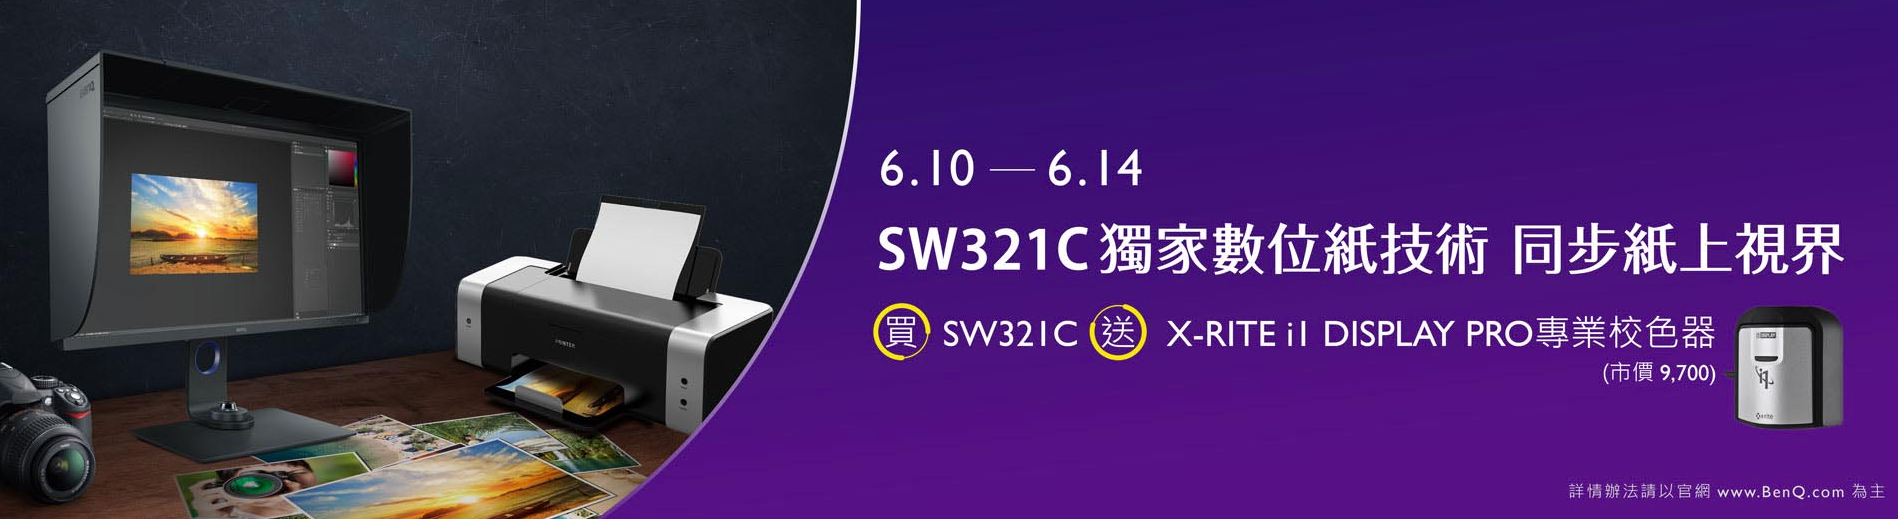 BenQ  SW321C 獨家數位紙技術 同步紙上視界